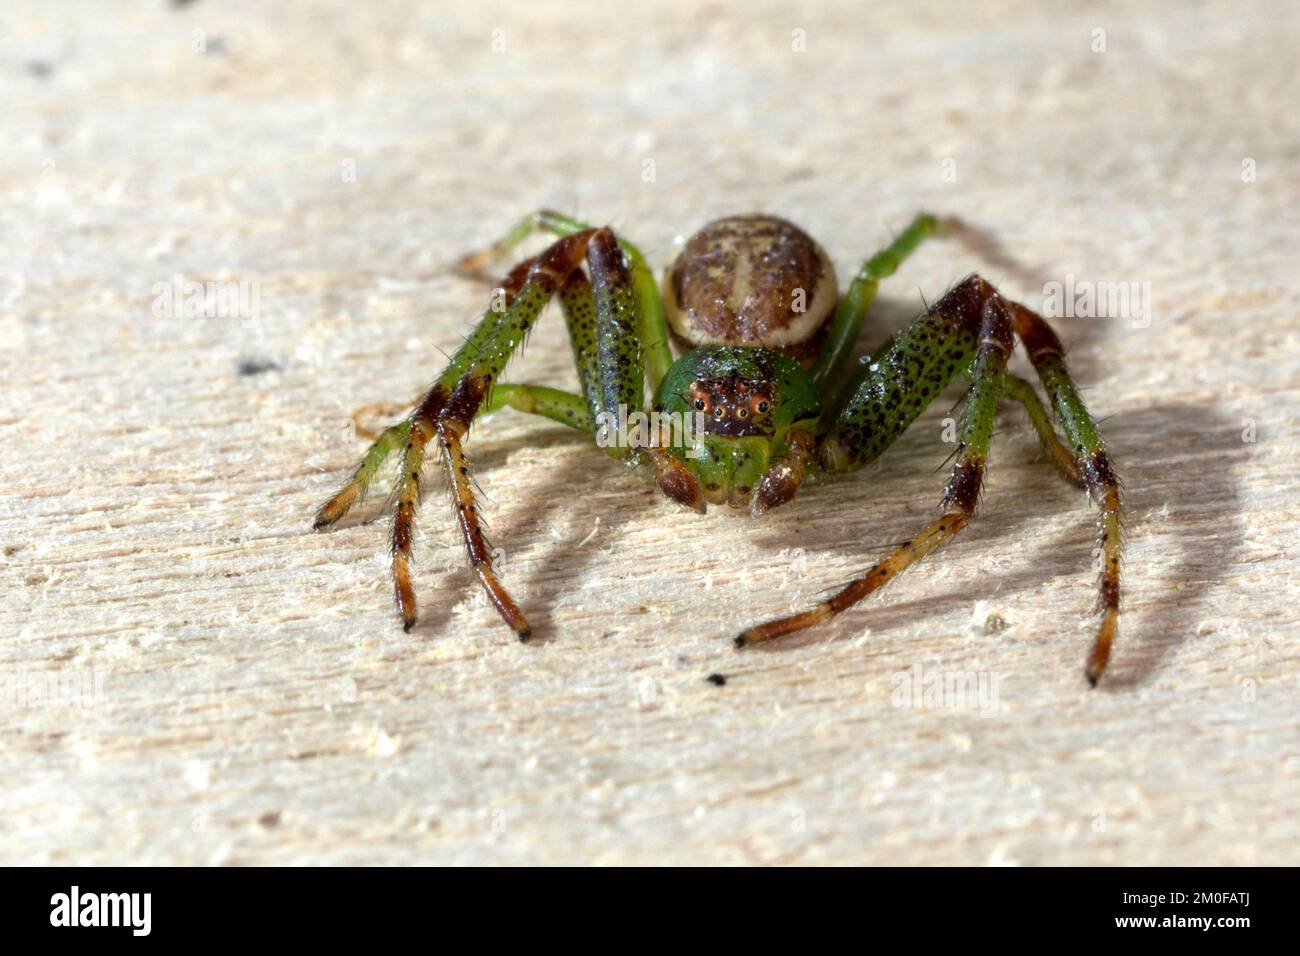 Araignée de crabe vert, araignée de crabe (Diaea dorsata), sur bois, vue de face, Allemagne Banque D'Images